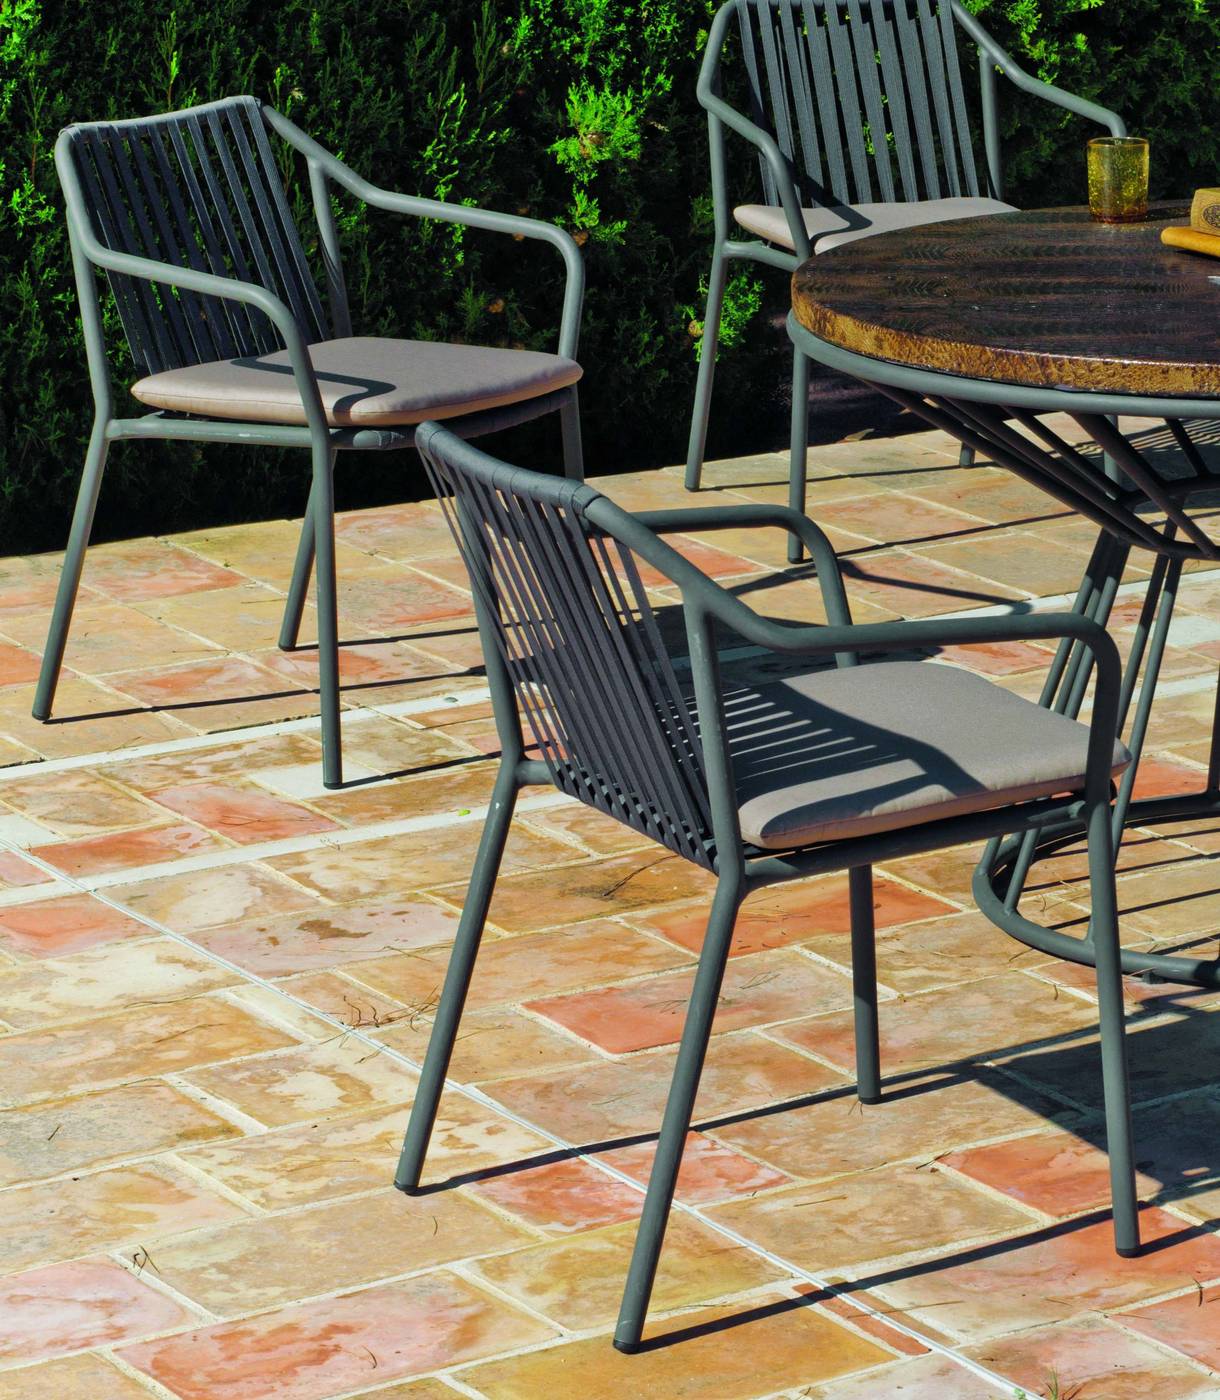 Conjunto Aluminio Lux Michigan - Conjunto de aluminio para jardín y terraza: mesa de comedor redonda de 120cm. + 6 sillones + cojines